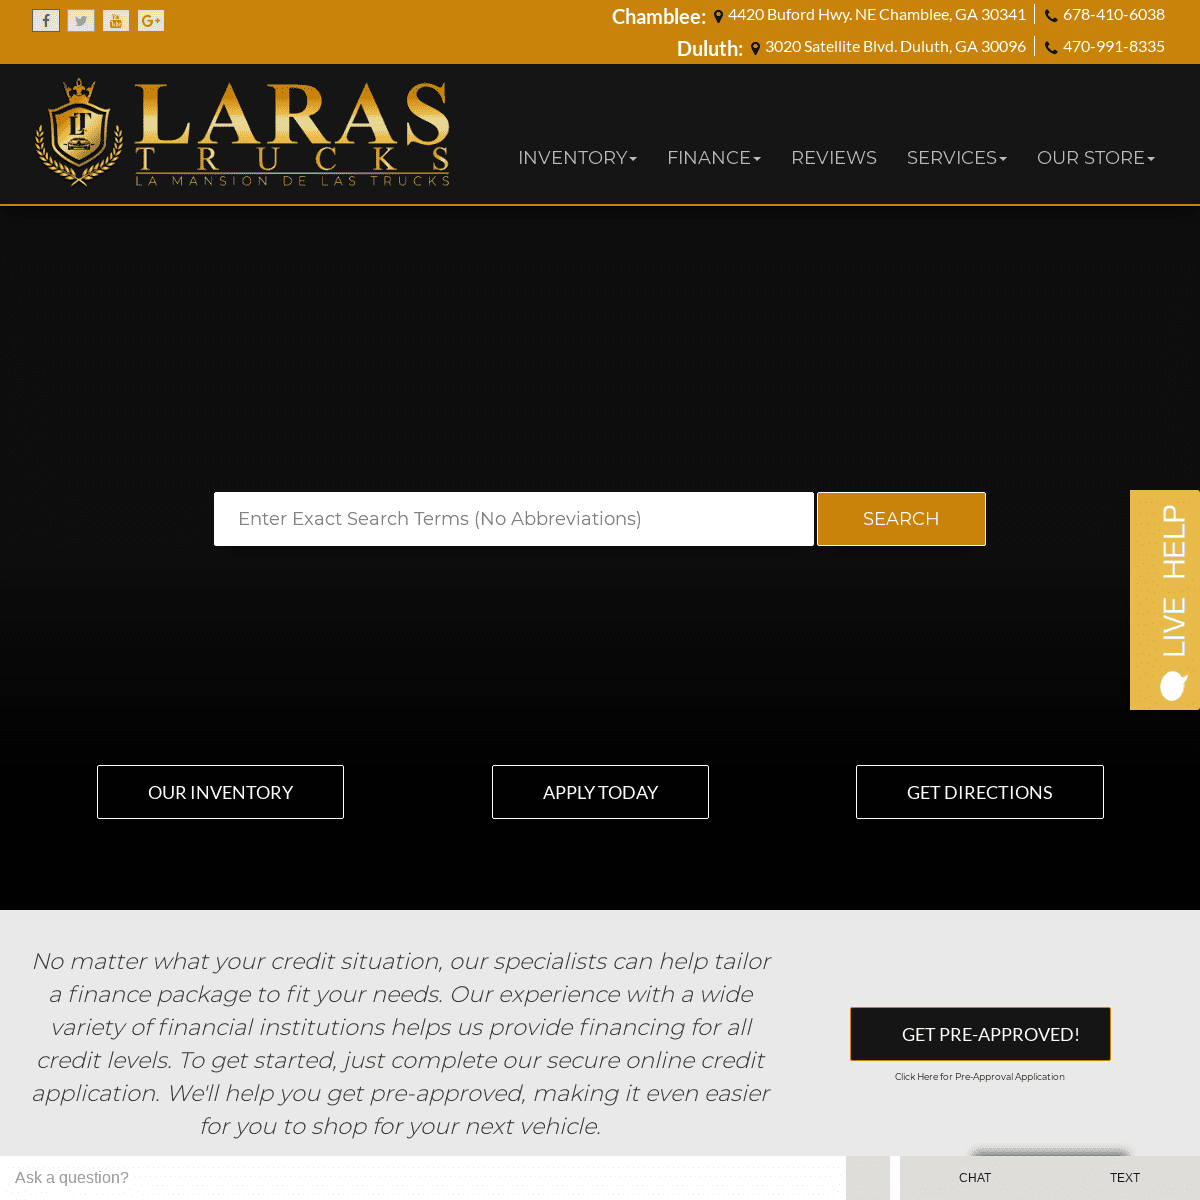 A complete backup of larastrucks.com